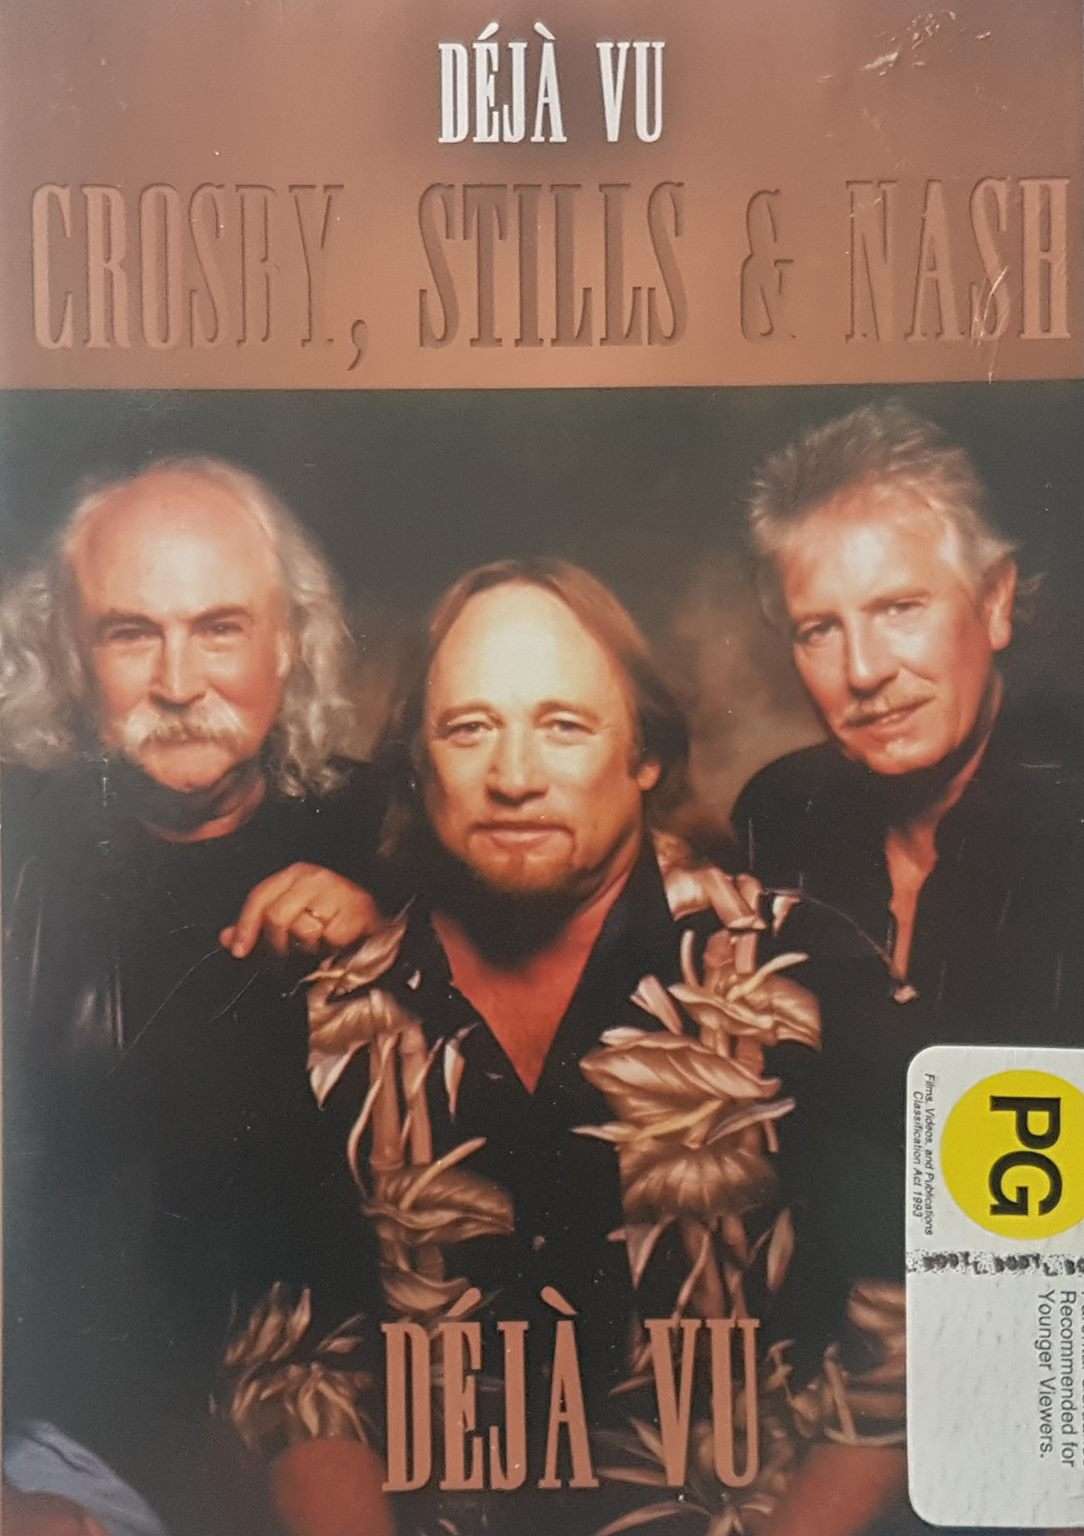 Crosby, Stills & Nash: Deja Vu